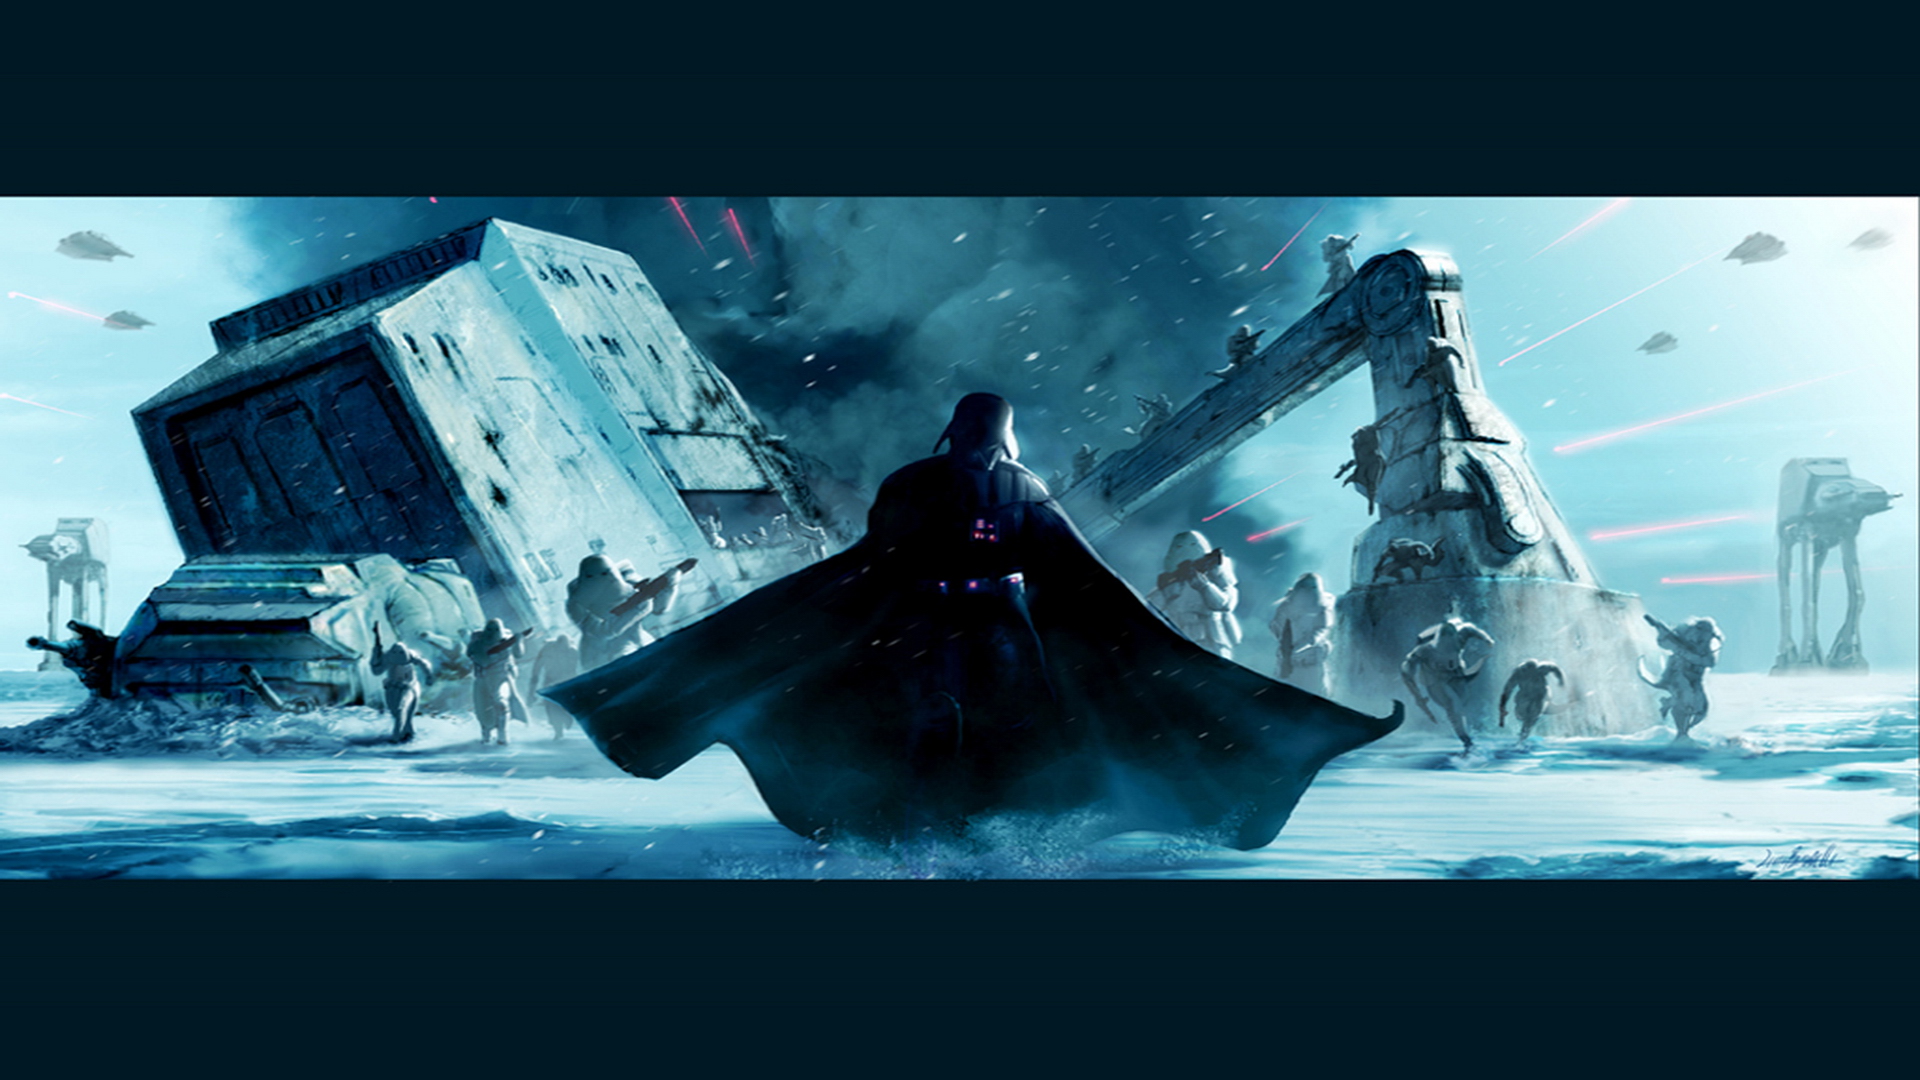 Star Wars Wallpaper Darth Vader Hoth